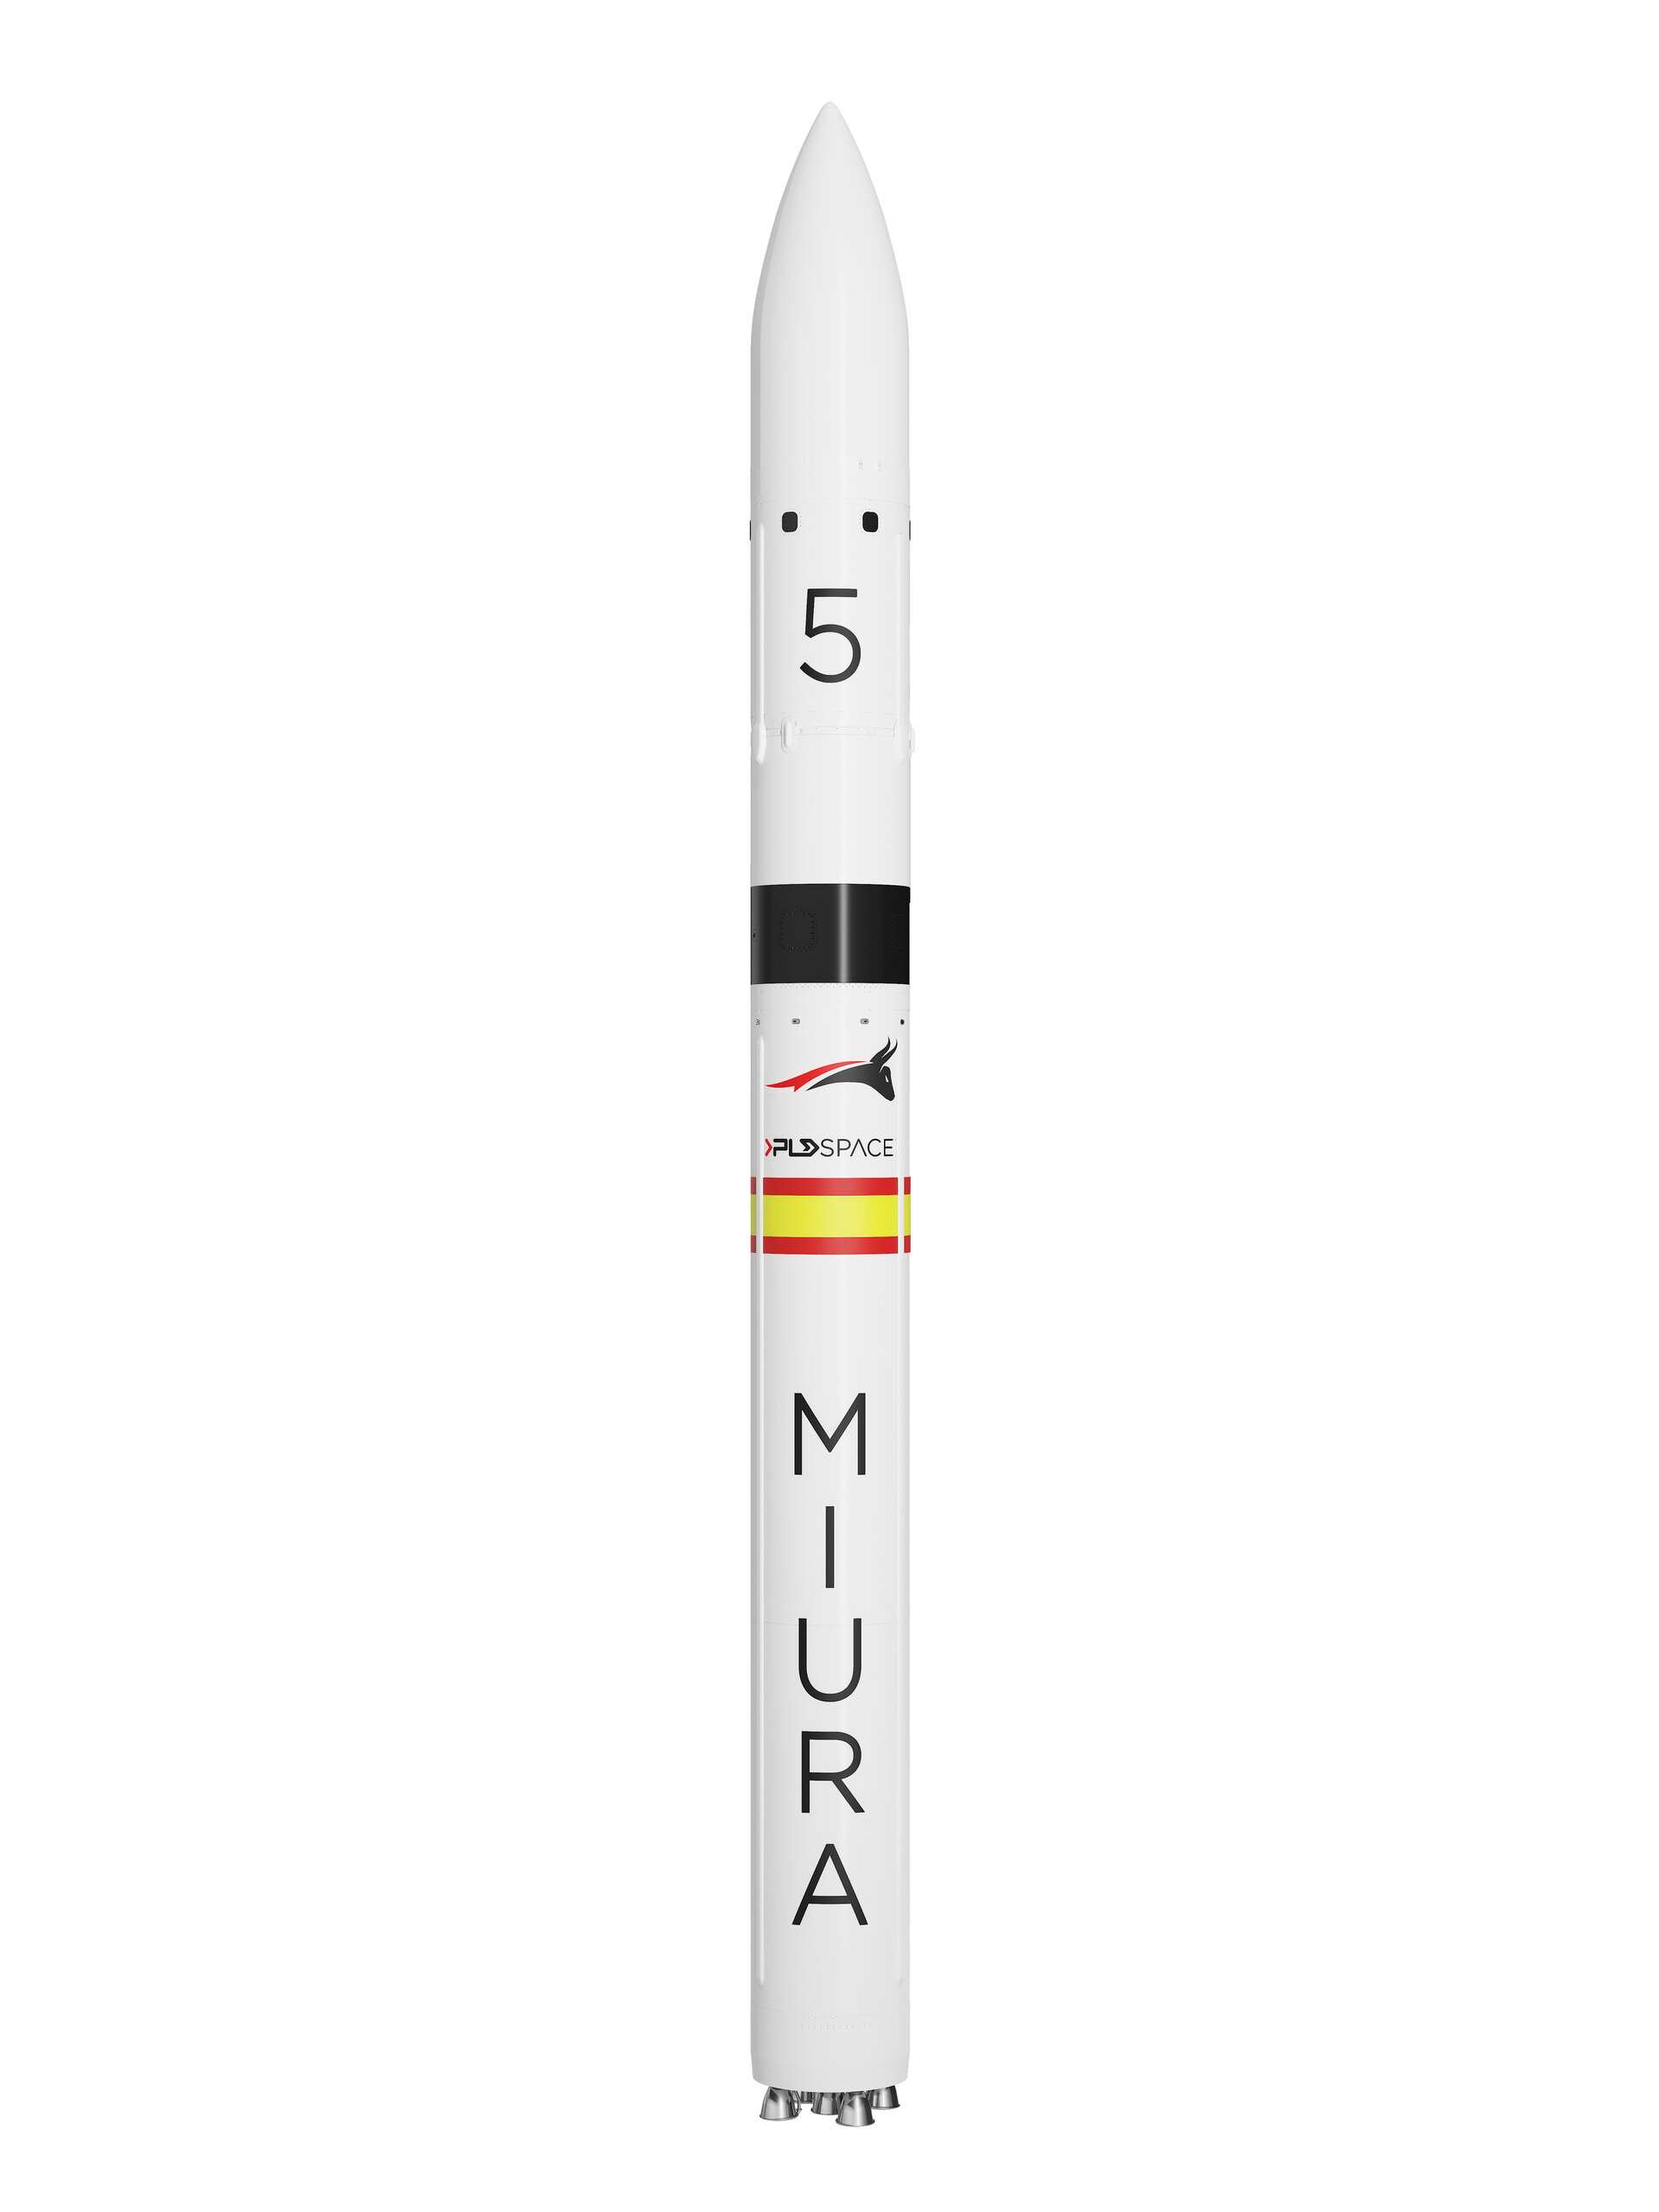 Dedikovaný nosič pro malé družice Miura 5